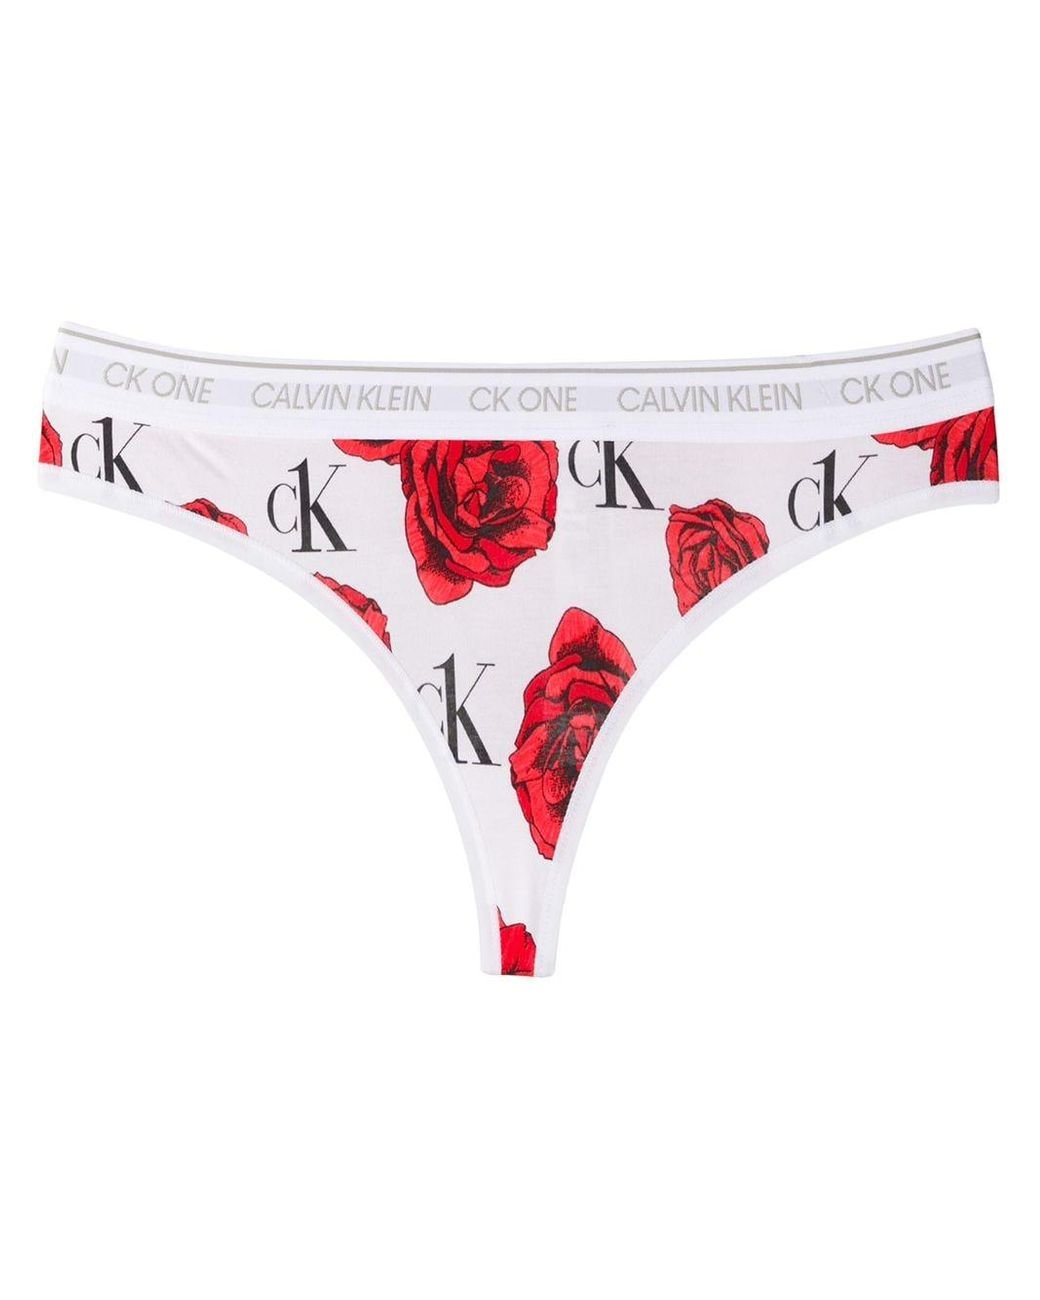 Panties Calvin Klein Radiant Cotton Thong 3-Pack Pink Splendor